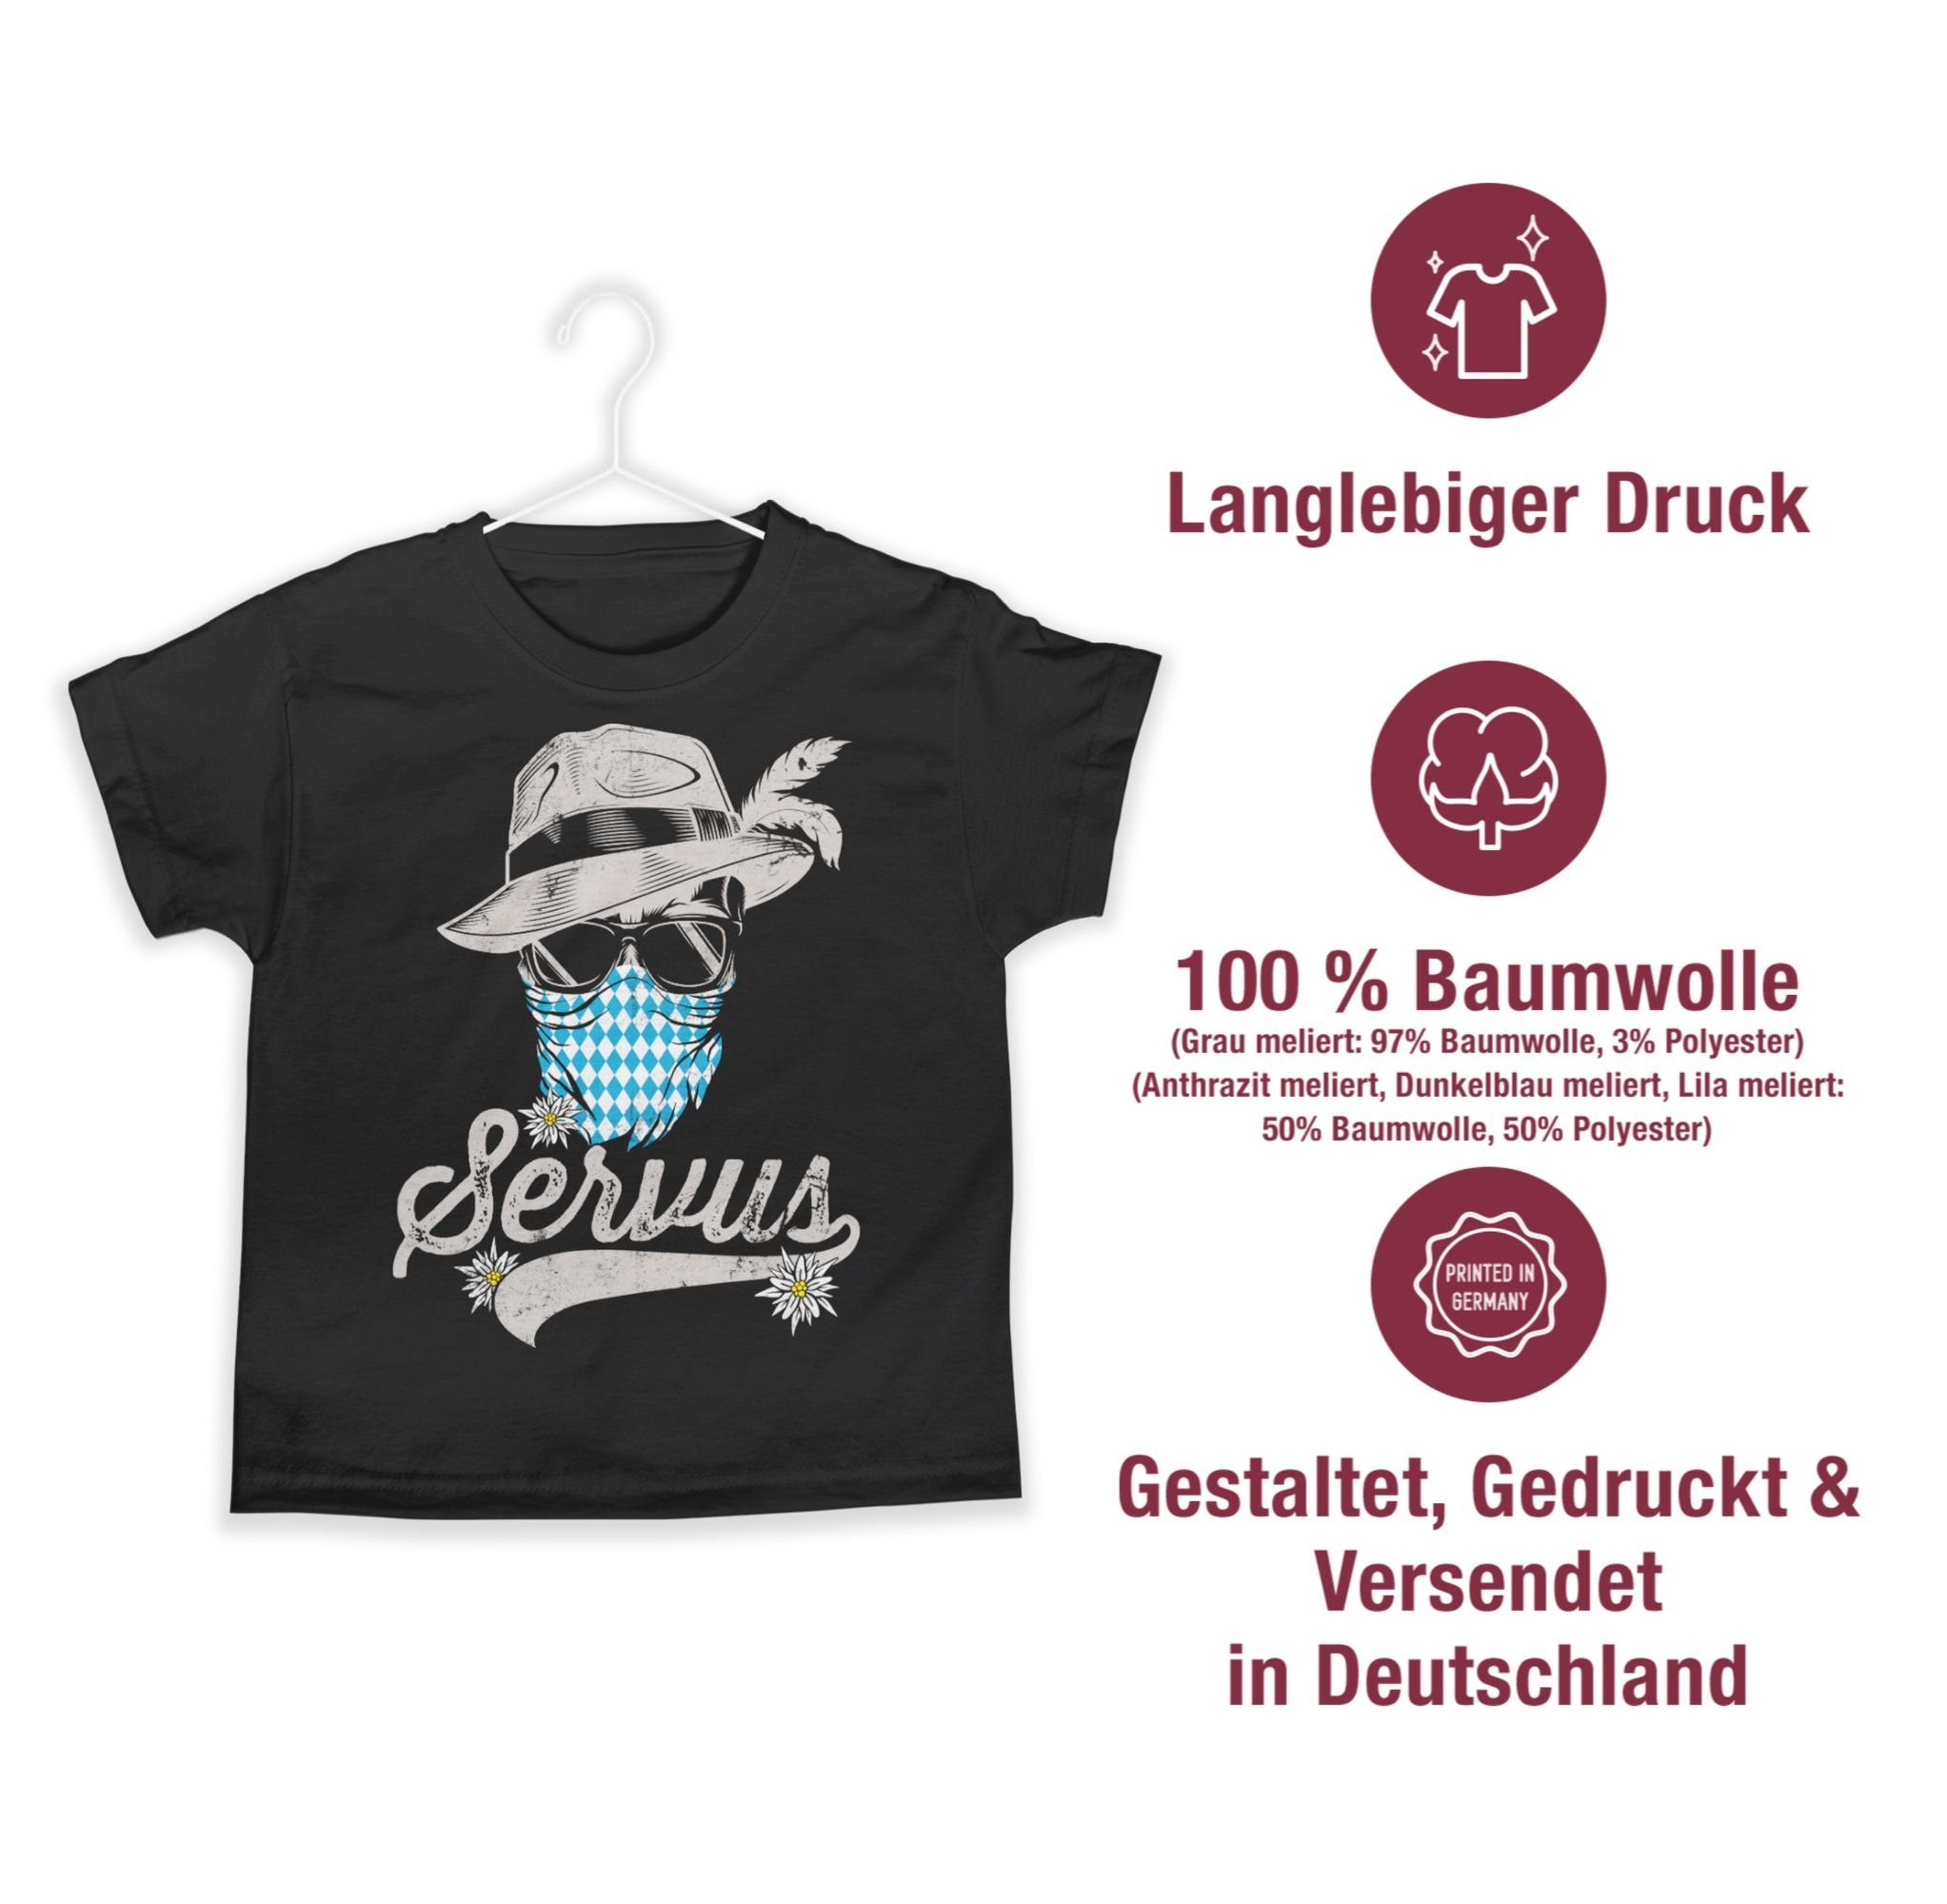 Bavaria Bayern T-Shirt Oktoberfest 01 Servus Kinder Bayrisch Trachten Shirtracer Edelweiß Tirol für Totenkopf Mode Outfit Schwarz